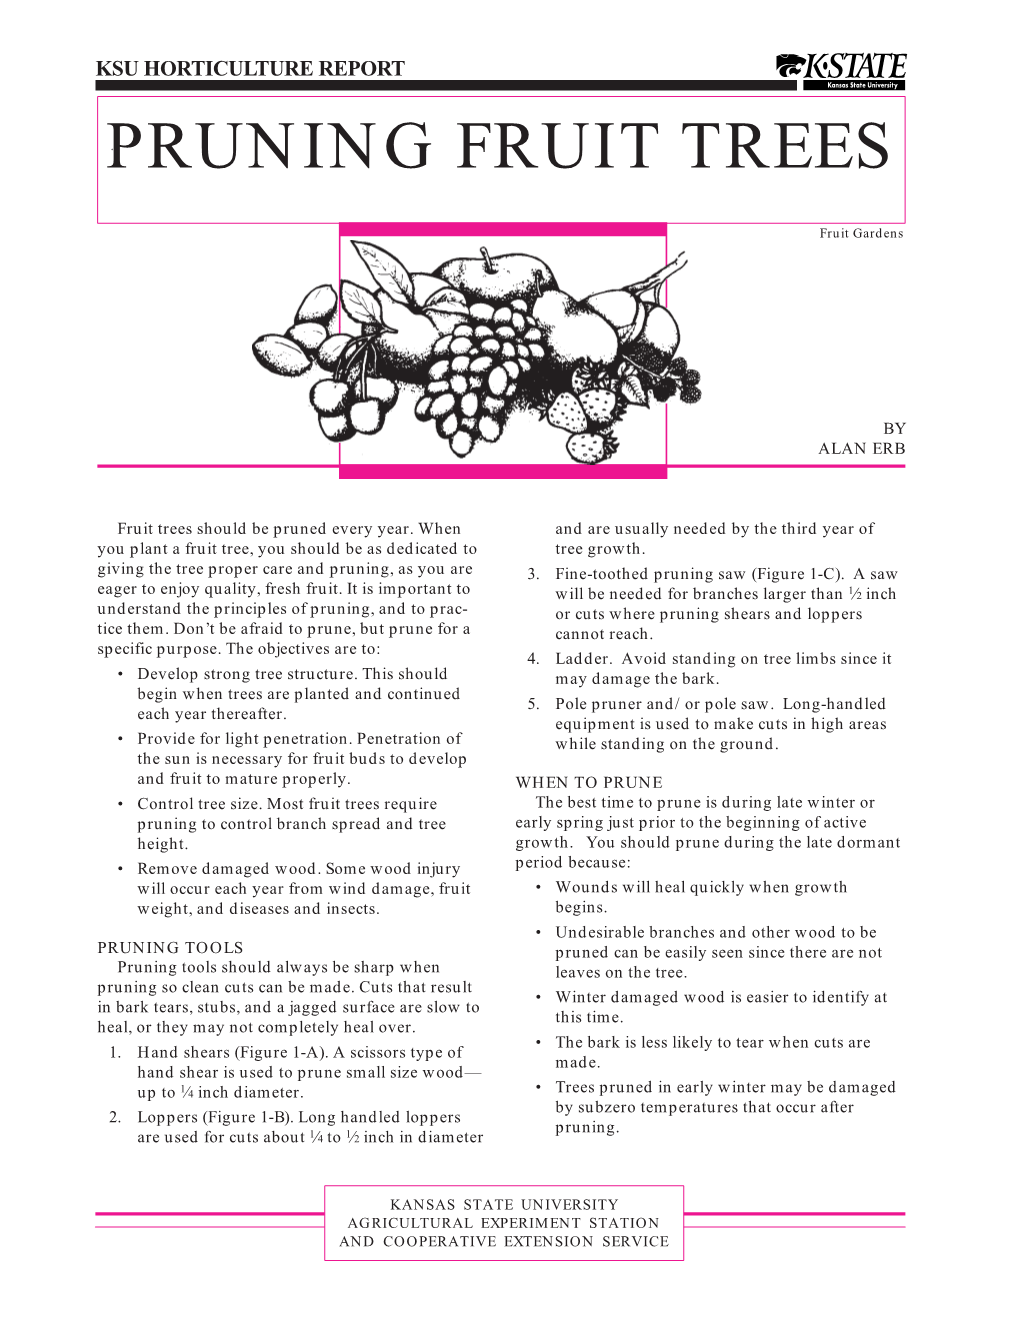 C631 Pruning Fruit Trees